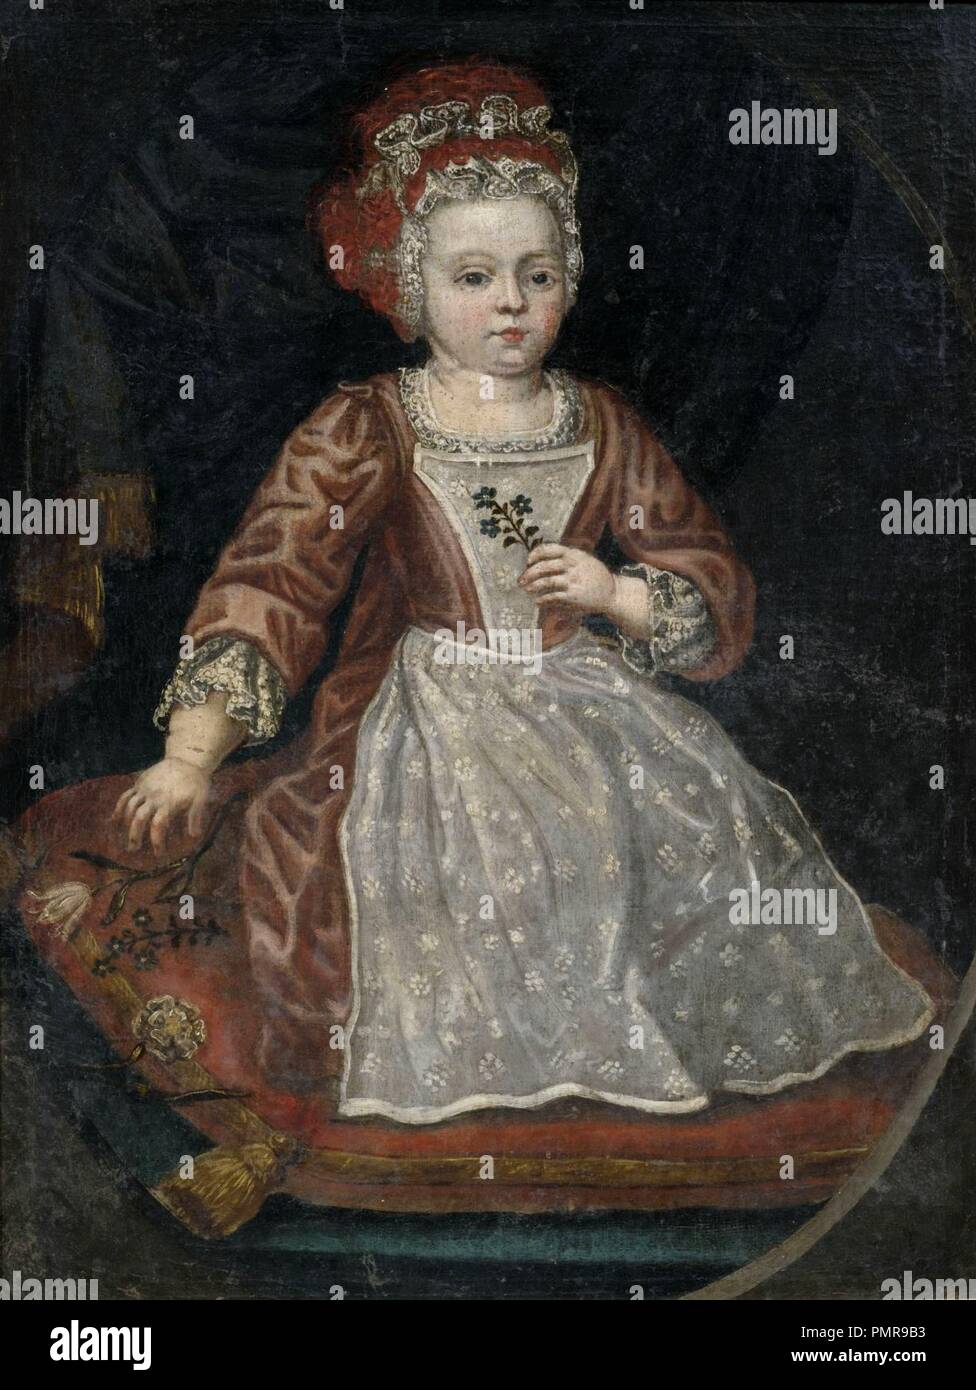 Bildnis eines kleinen Mädchens Kleid mit rotem dans weißer Schürze 18 Jh. Banque D'Images